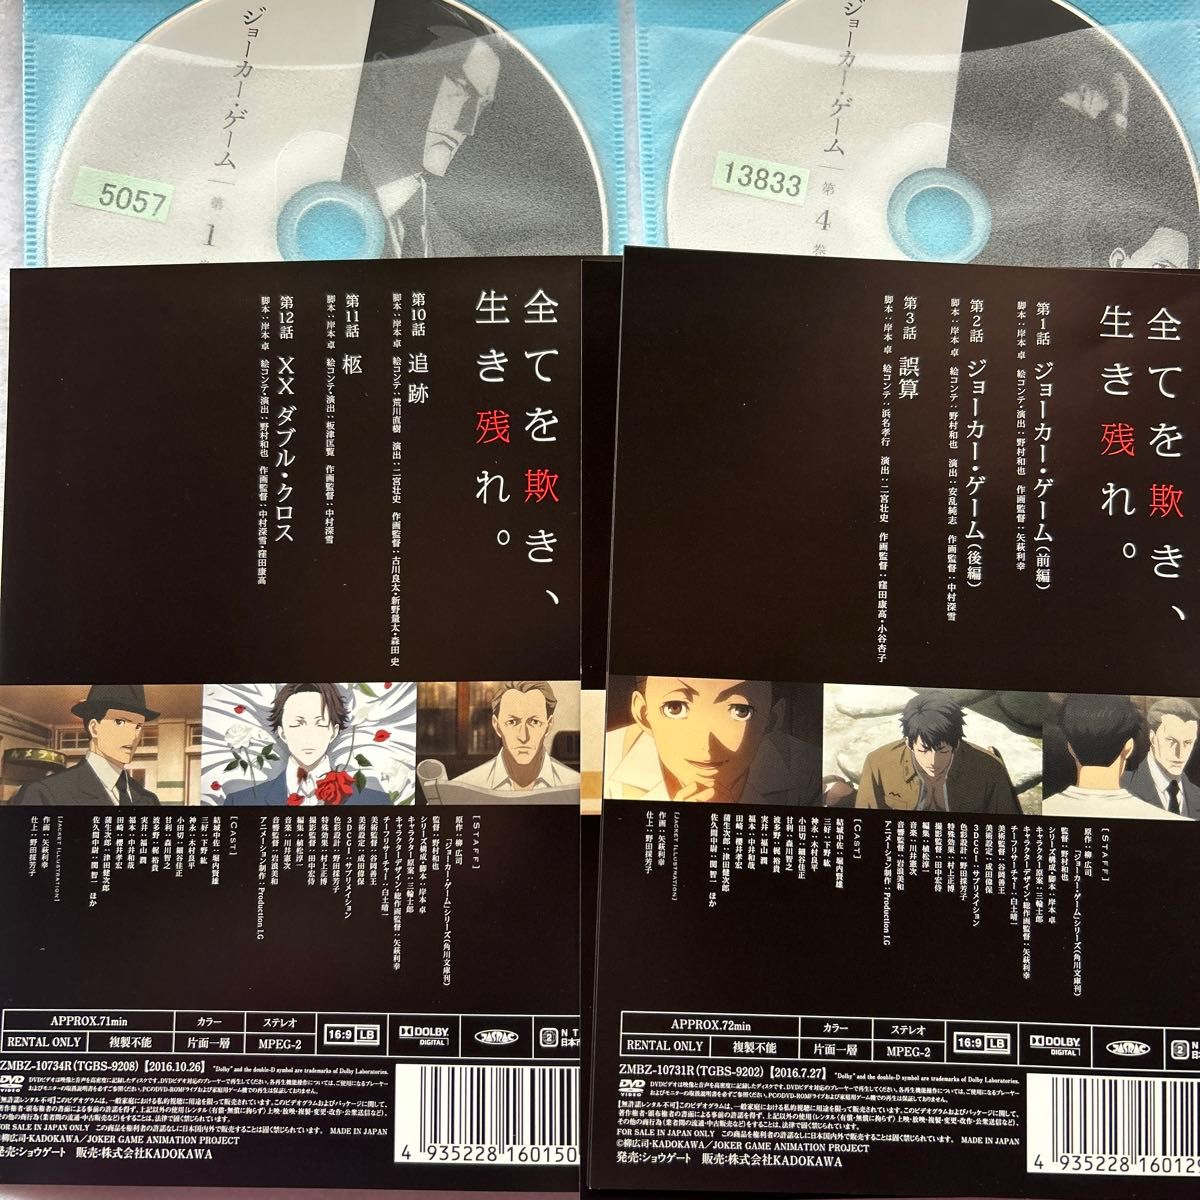 ジョーカー・ゲーム　全4巻　レンタル版DVD